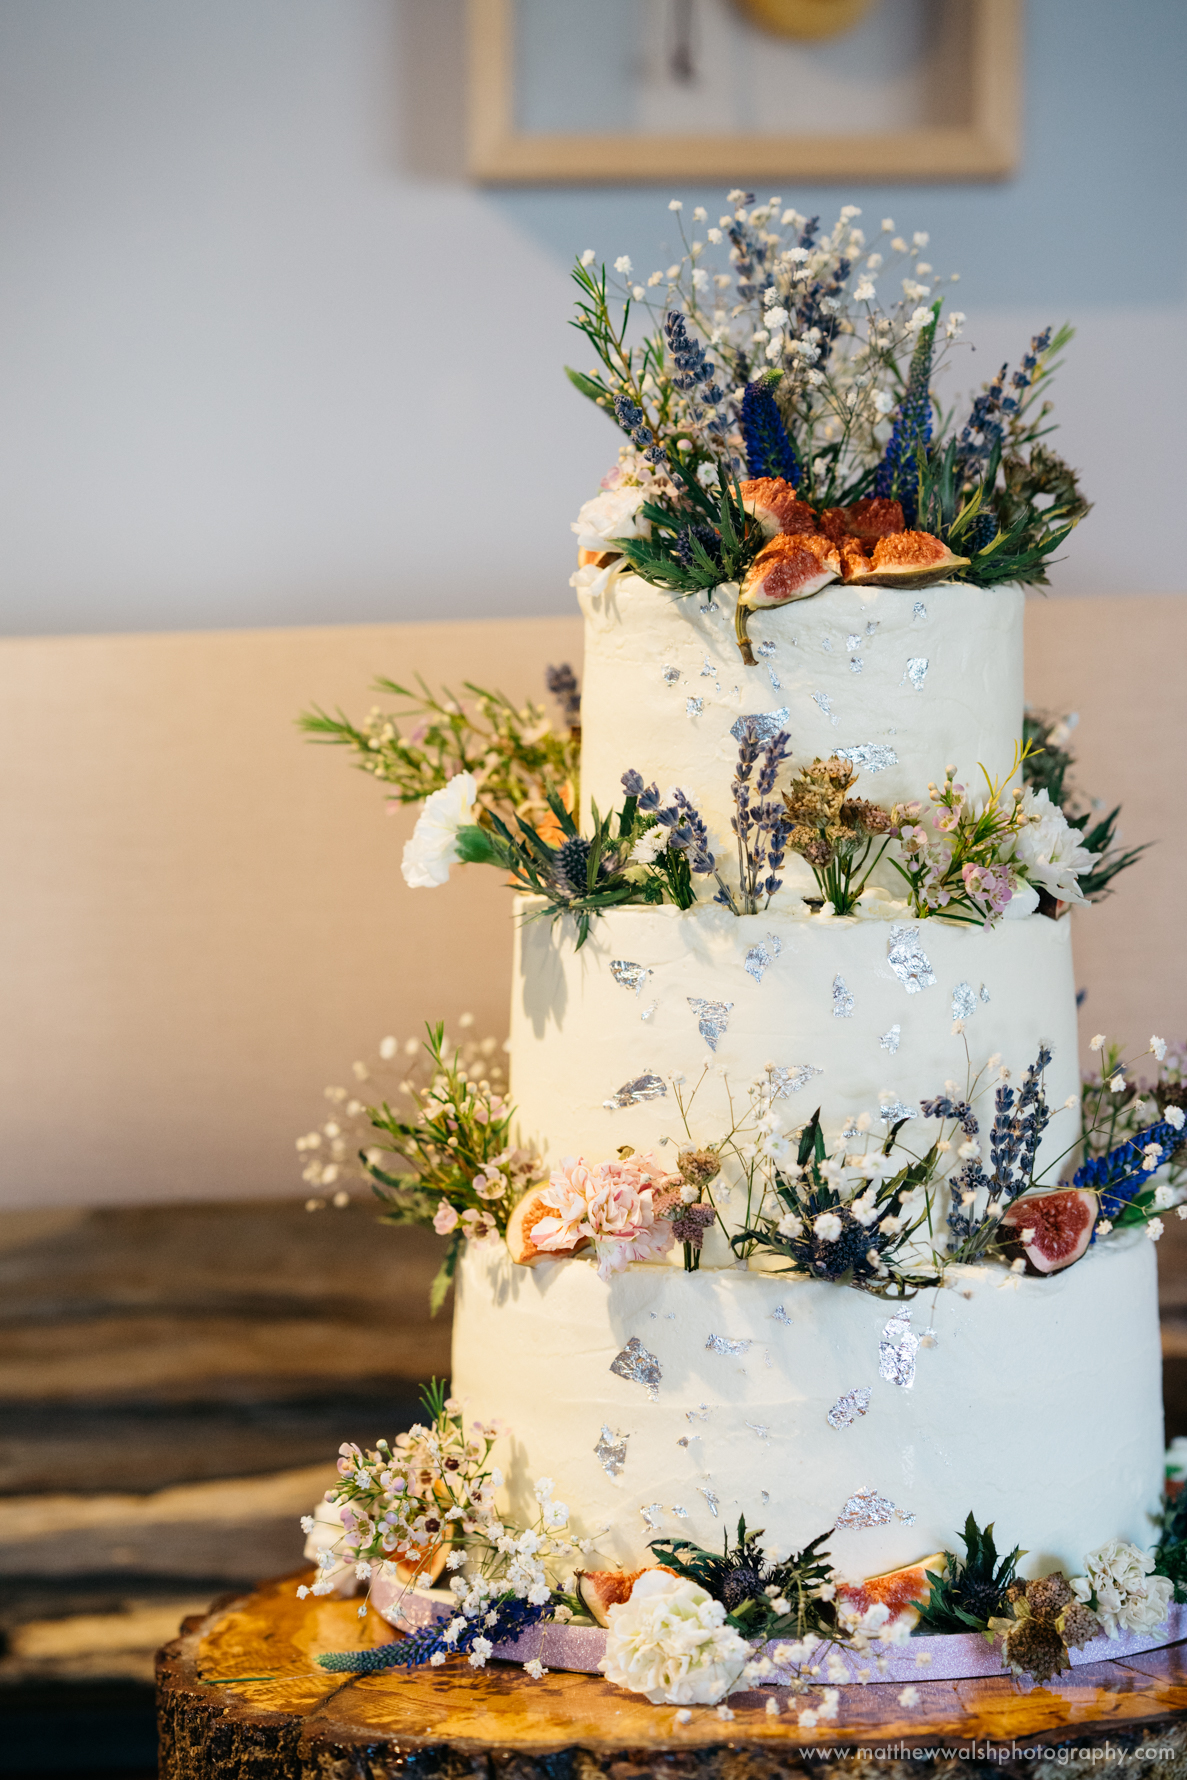 The wonderful wedding cake